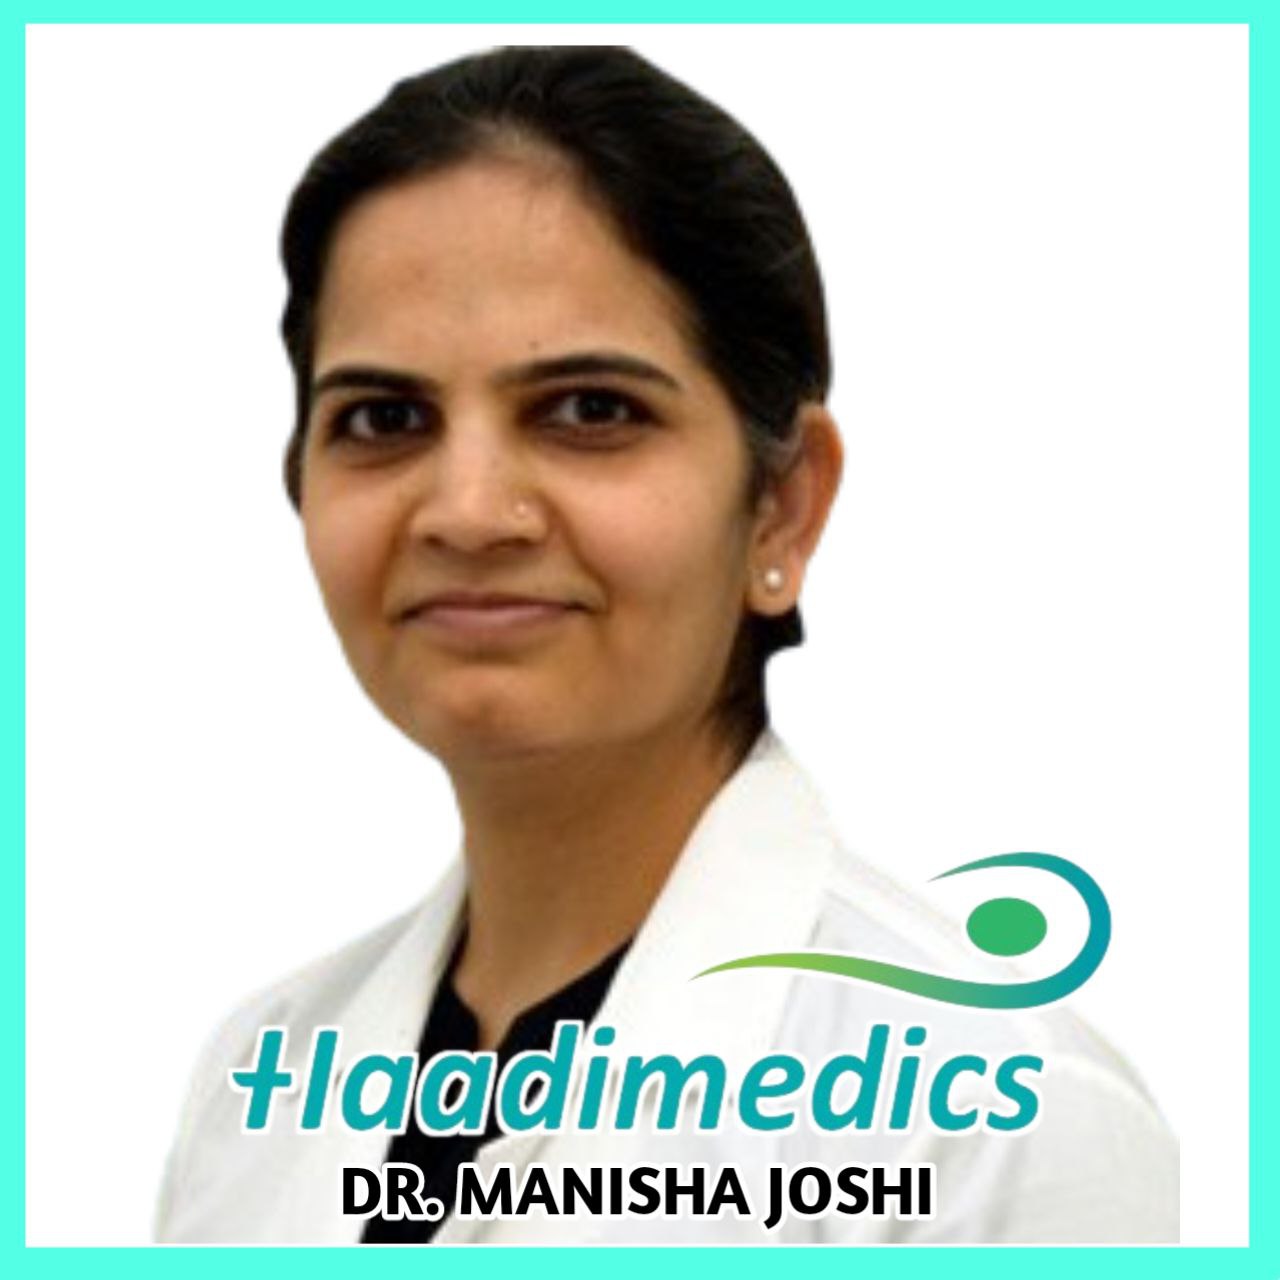 Dr. Manisha Joshi